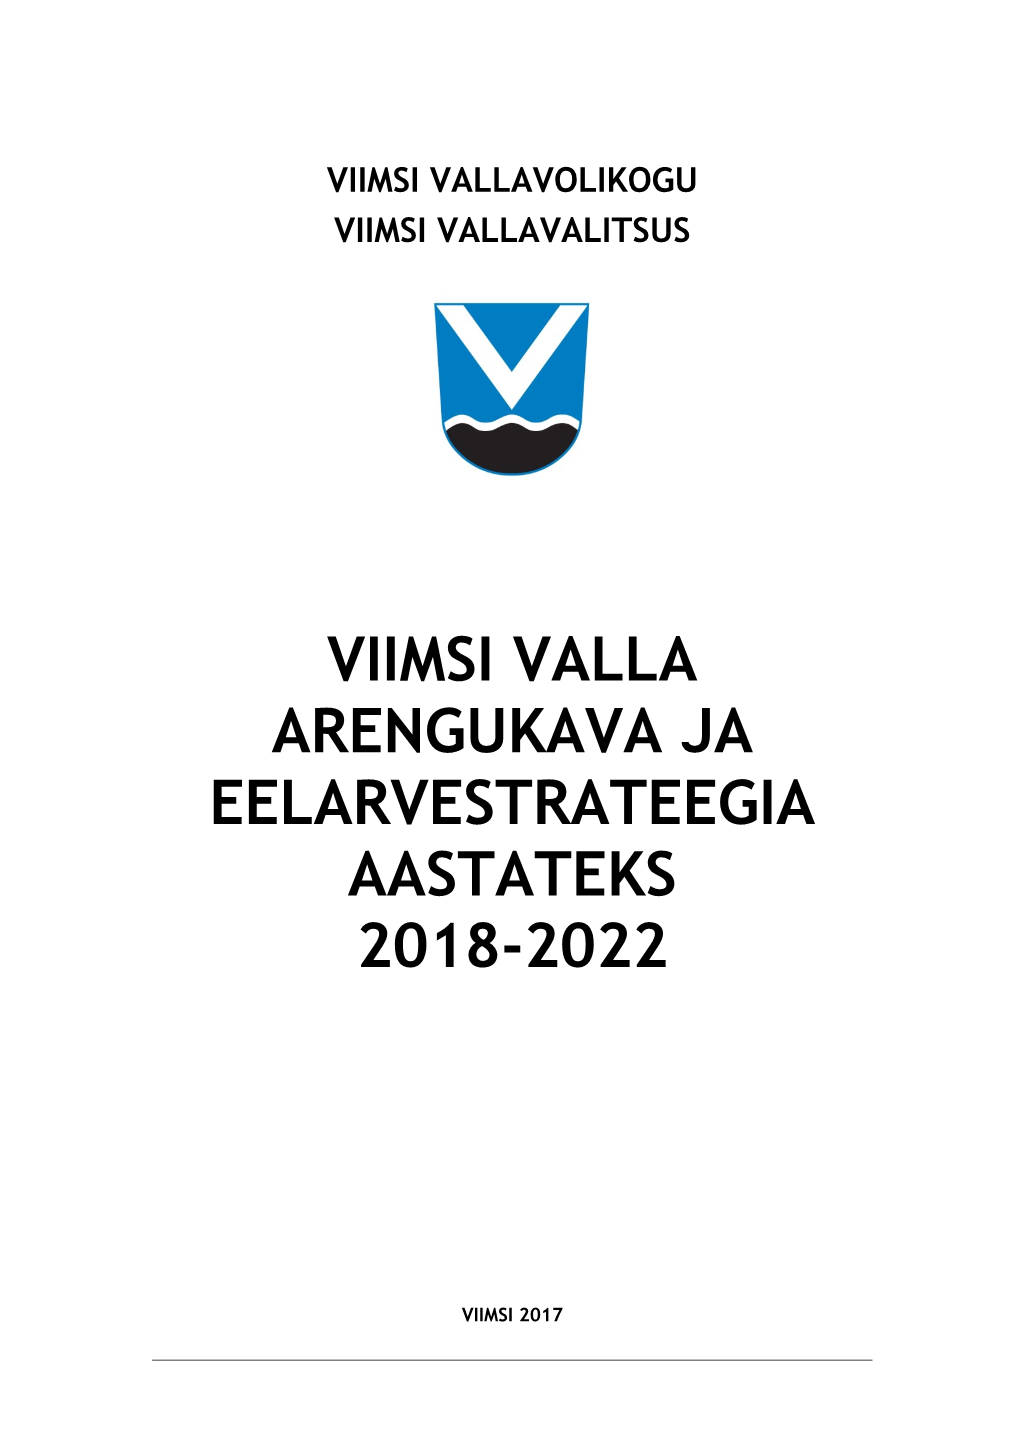 Viimsi Valla Arengukava Ja Eelarvestrateegia Aastateks 2018-2022